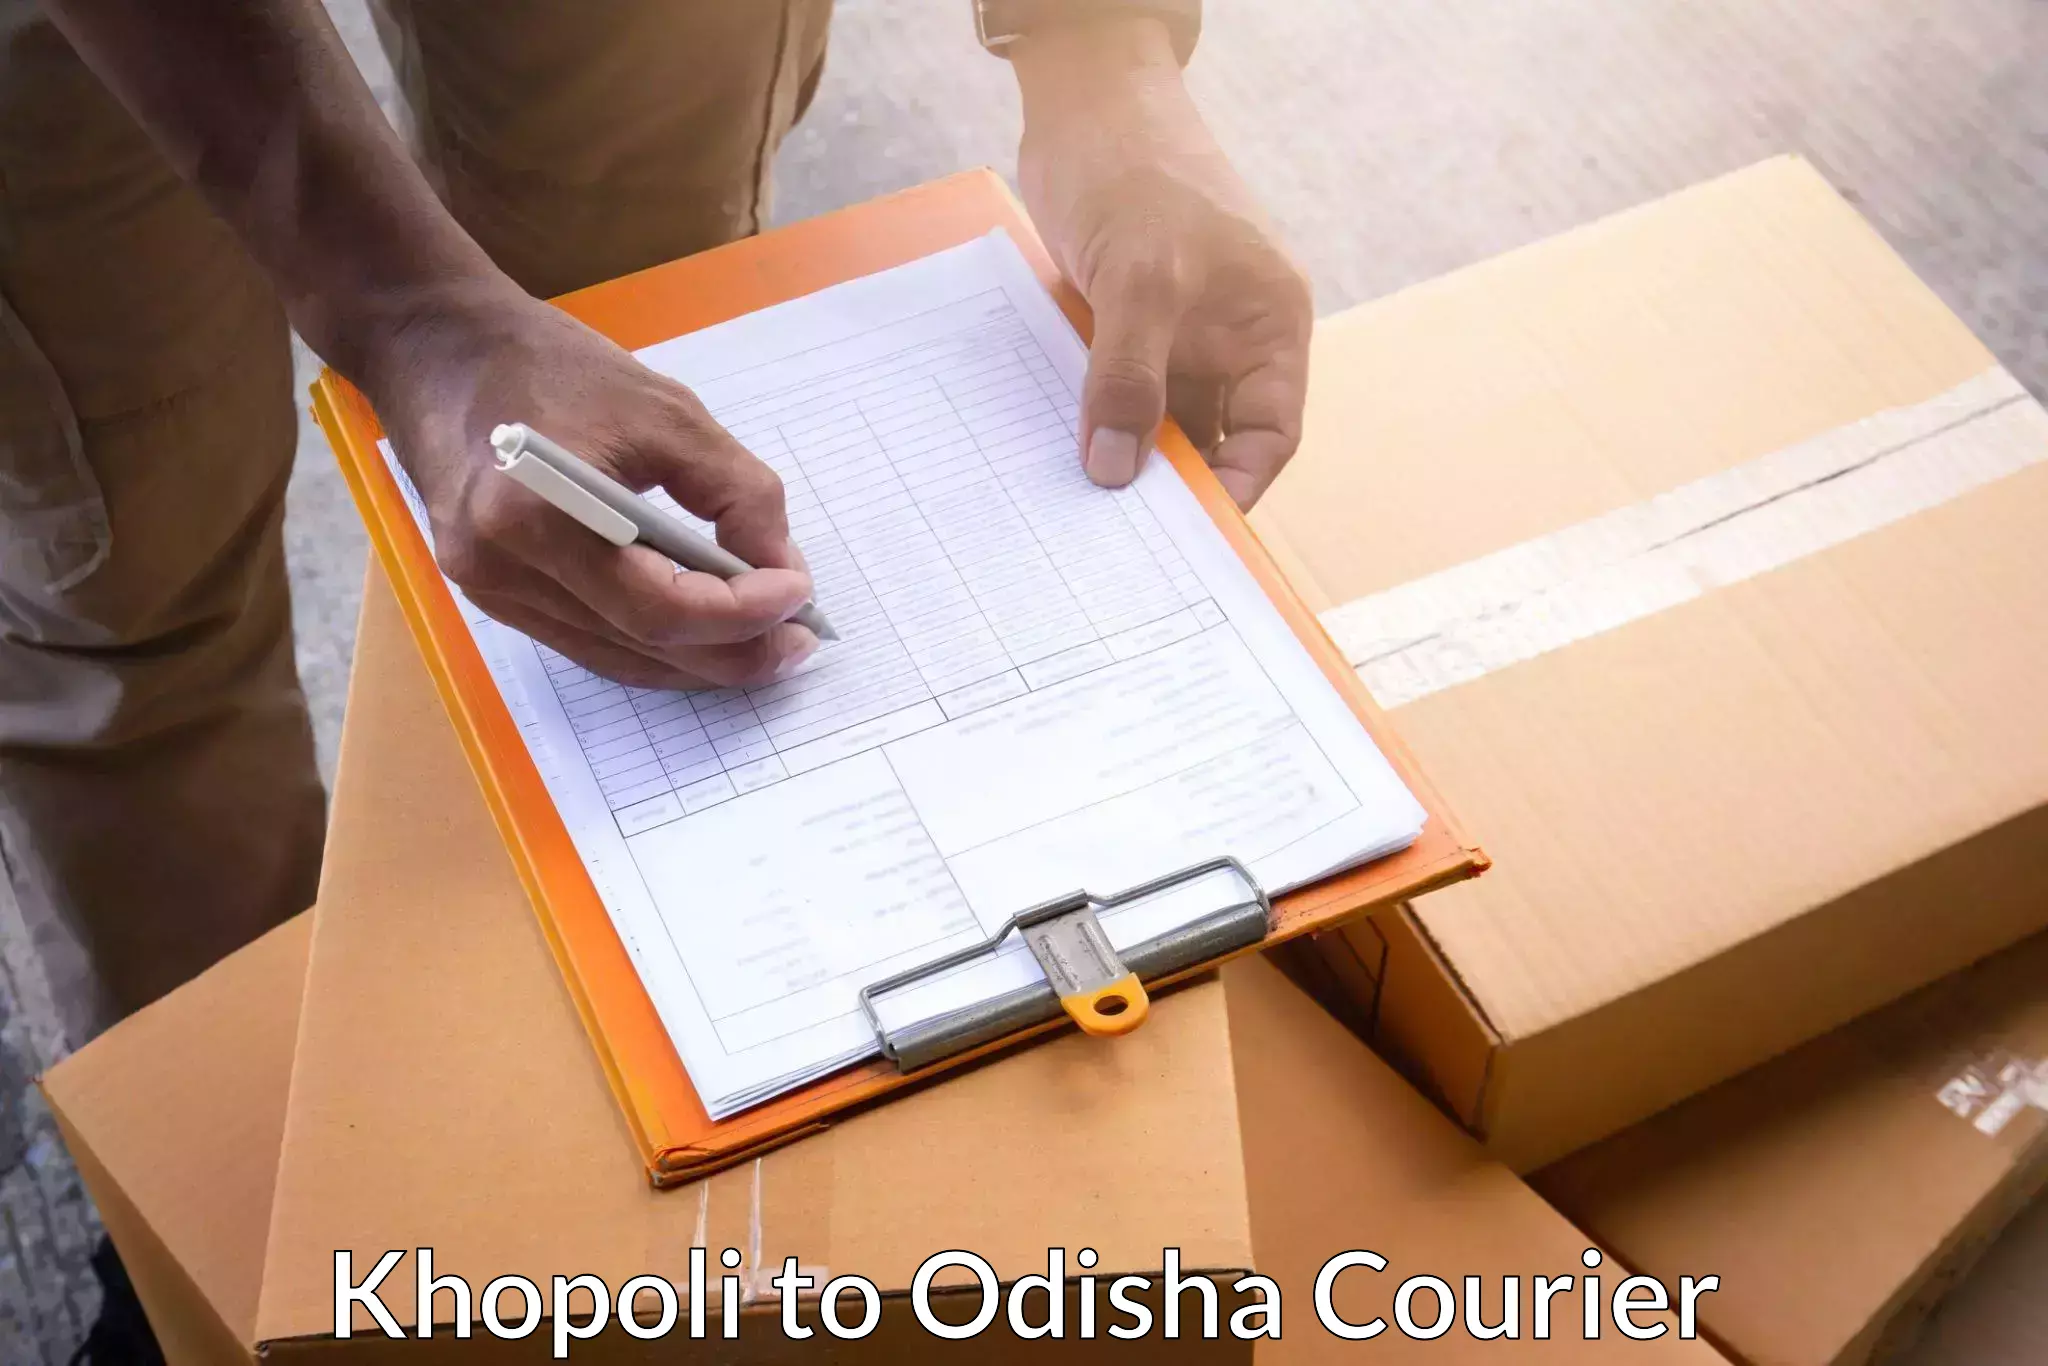 Advanced tracking systems Khopoli to Odisha